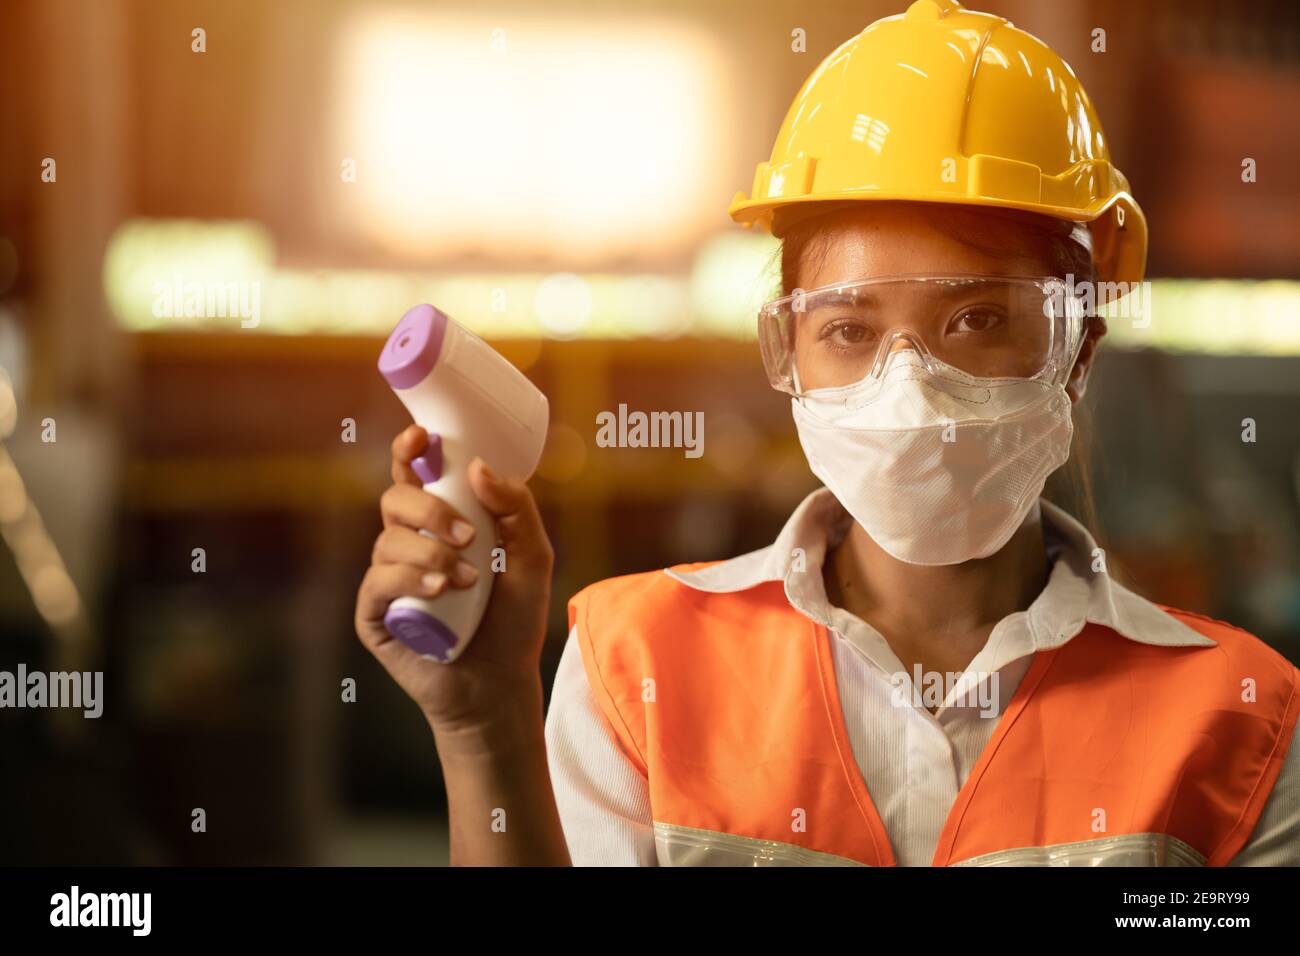 Industriearbeiterinnen tragen Gesichtsmaske und überprüfen die Körpertemperatur während der Coronavirus (COVID-19) Pandemie. Stockfoto